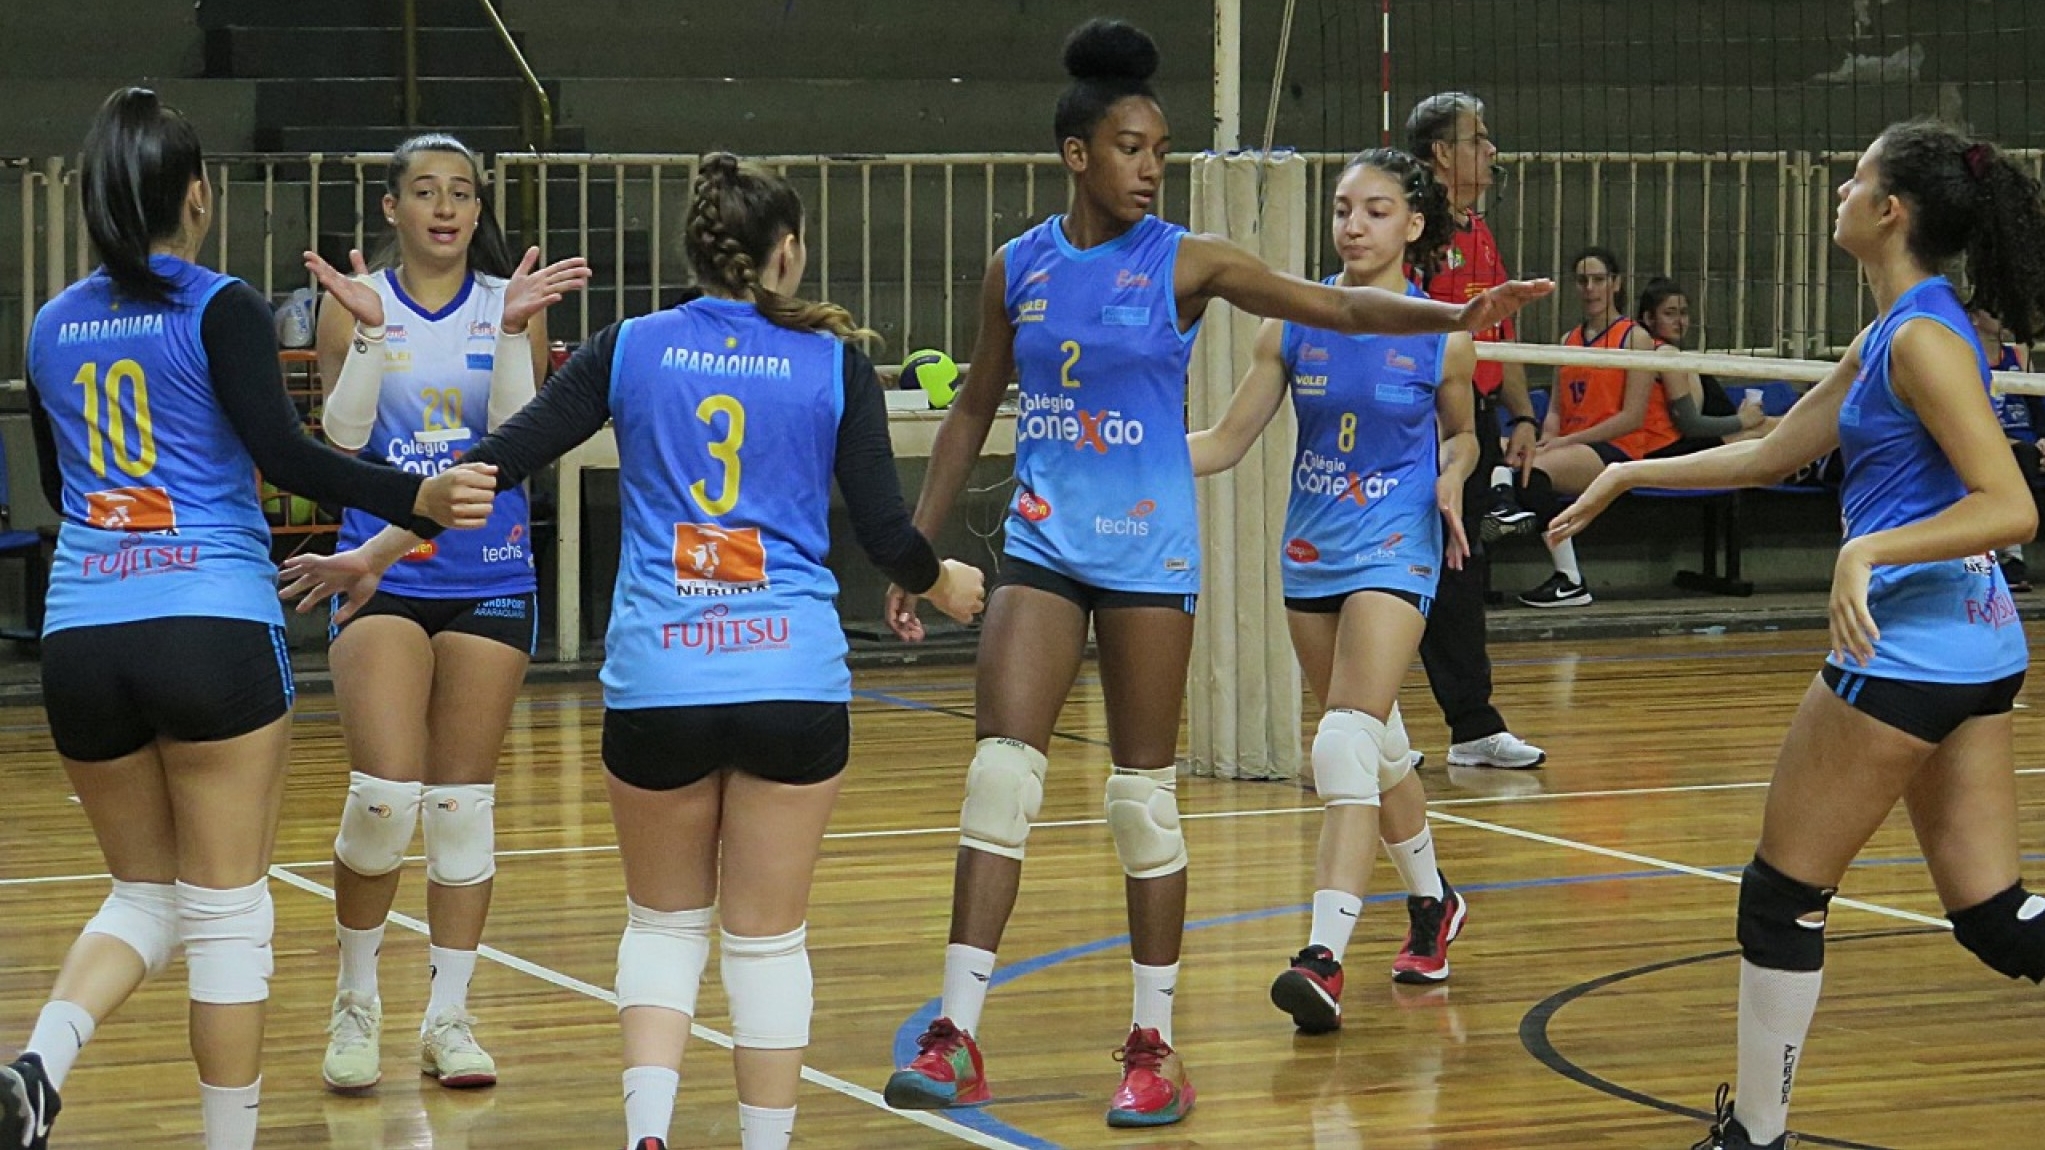 Vôlei feminino de Araraquara faz primeiro jogo em casa pelo Campeonato  Paulista - Portal Morada - Notícias de Araraquara e Região